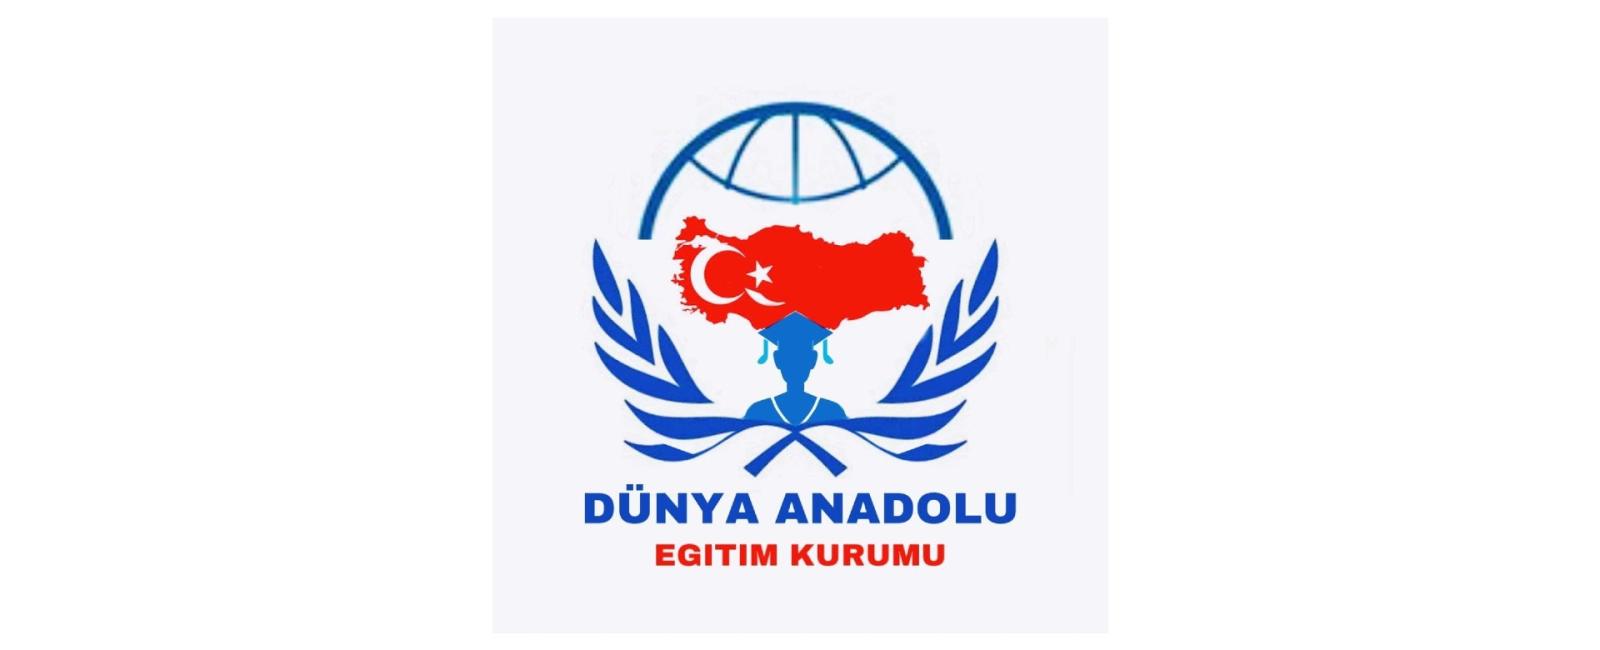 مدارس دنيا الاناضول العالمية - اسطنبول